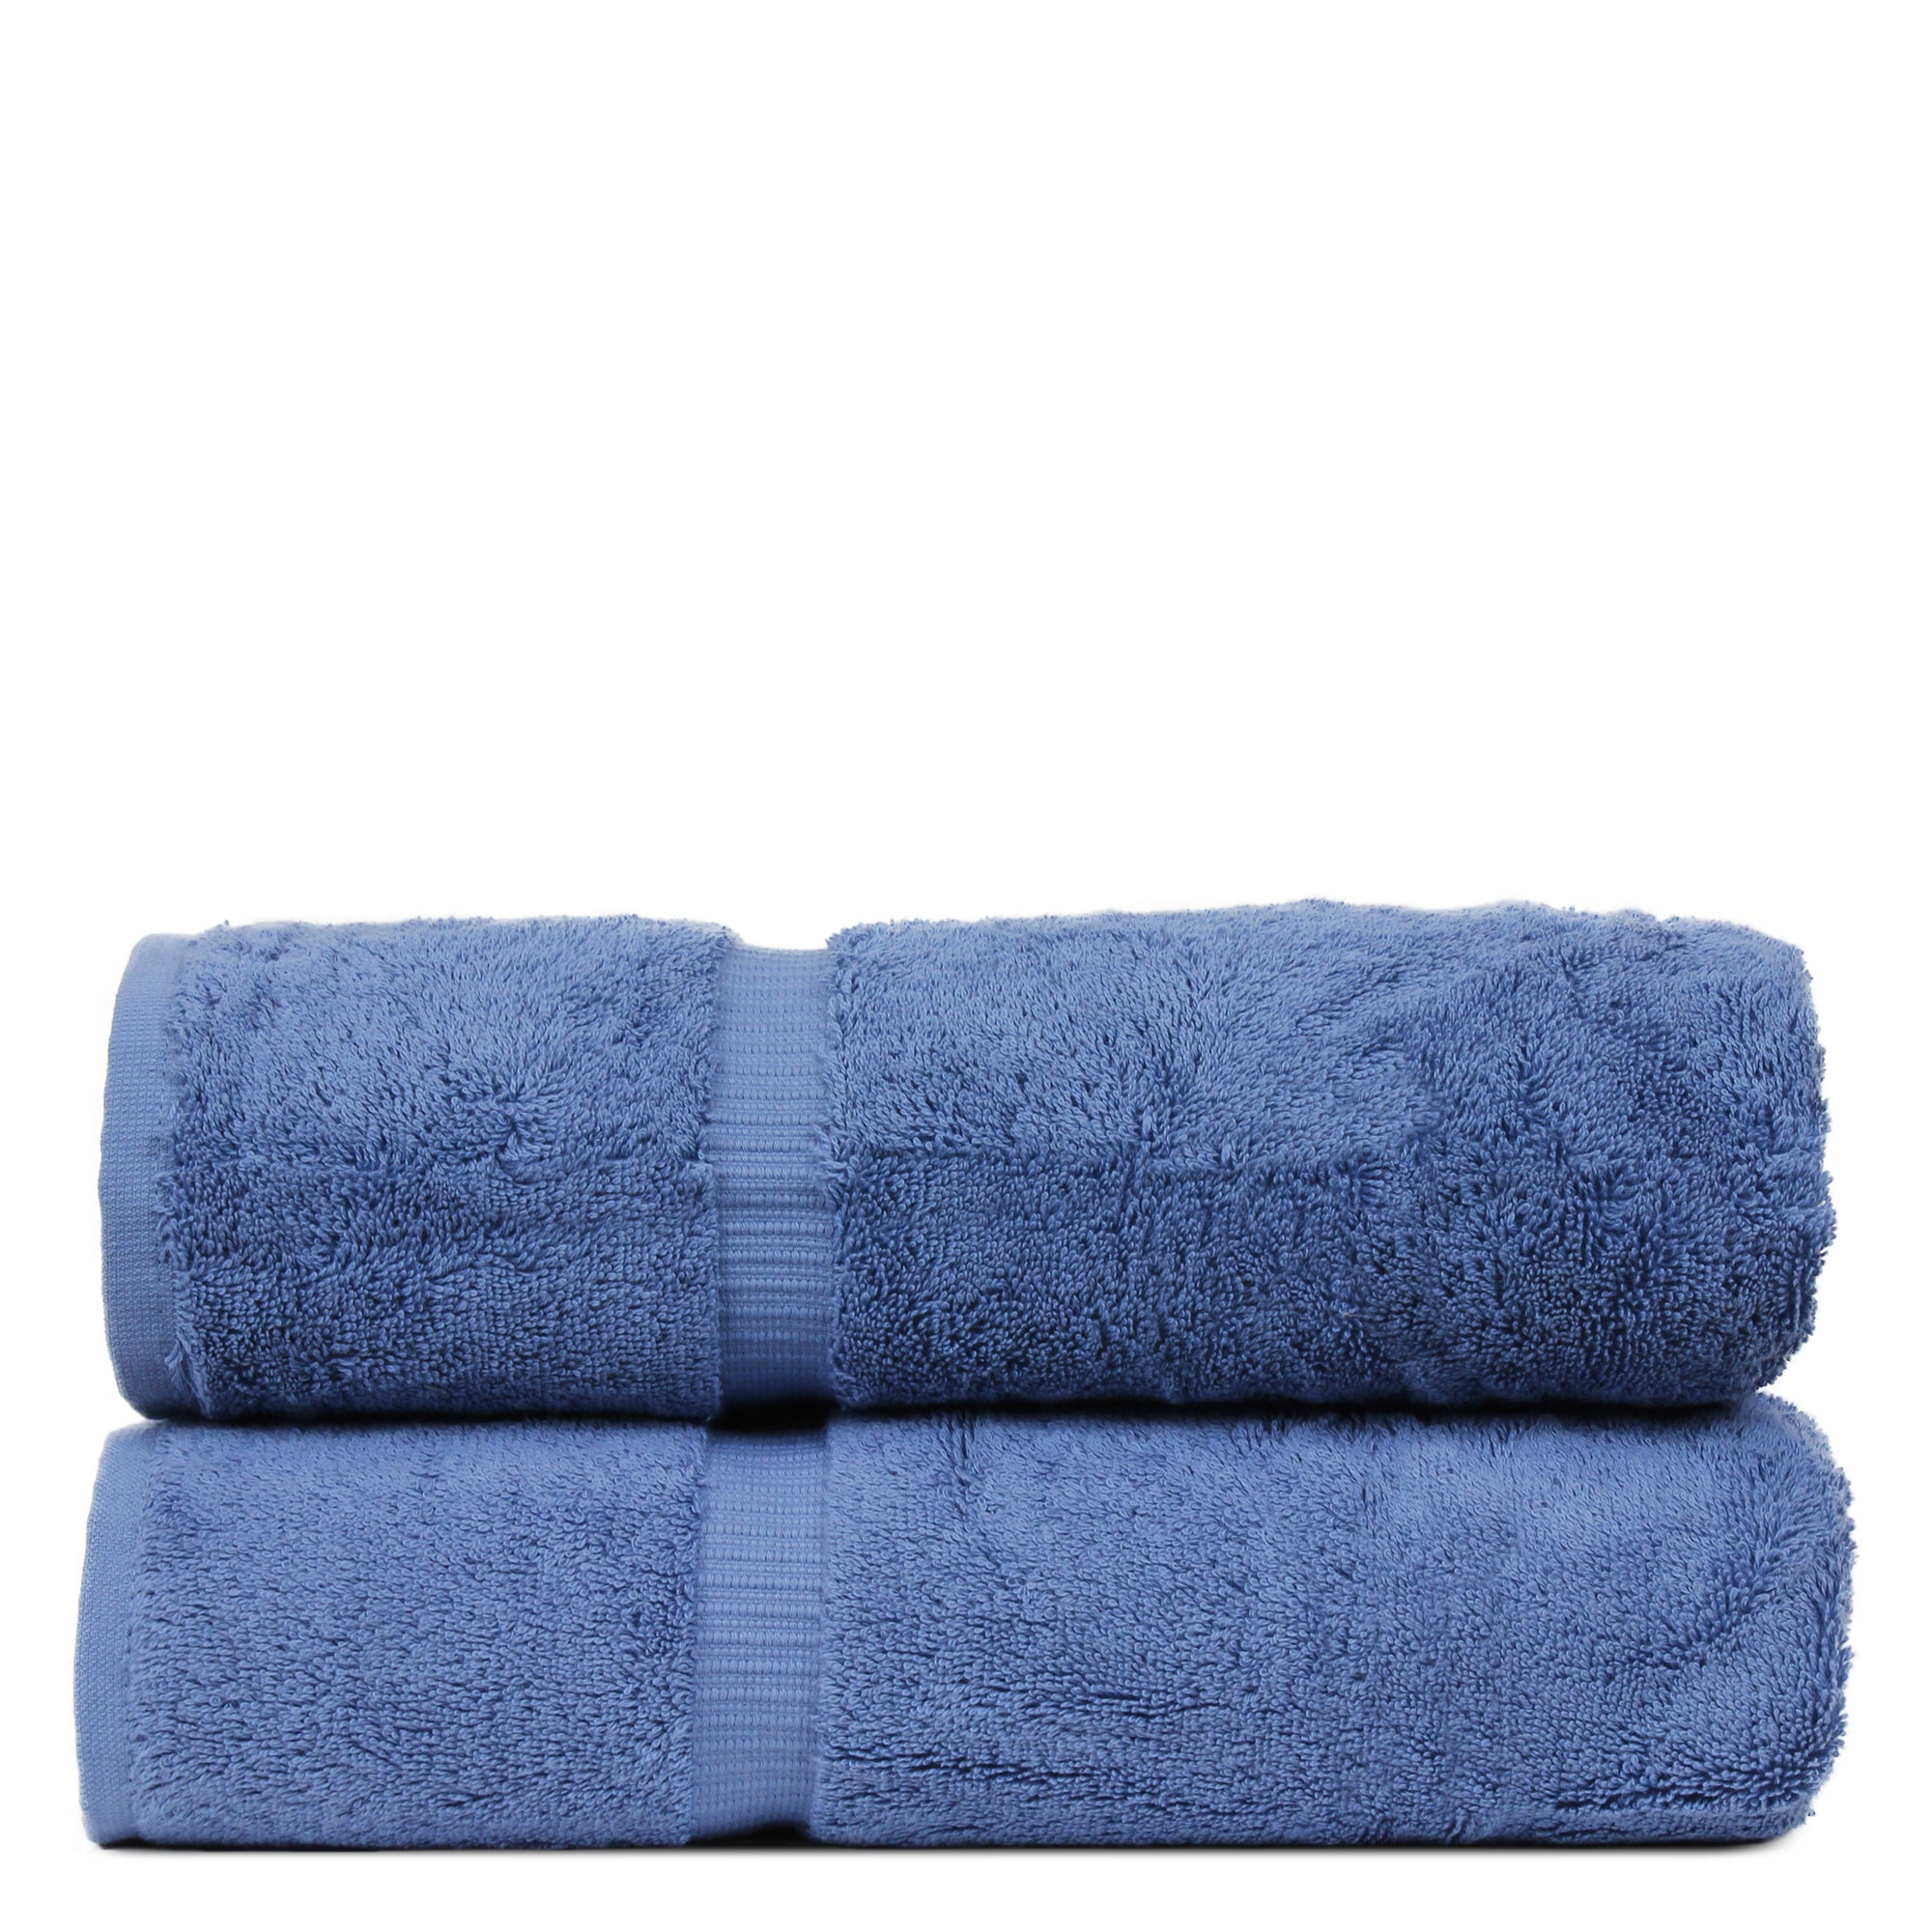  Luxury Hotel & Spa 100% Cotton Premium Turkish Bath Towels, 27  x 54'' (Set of 4, Wedgewood) : Home & Kitchen